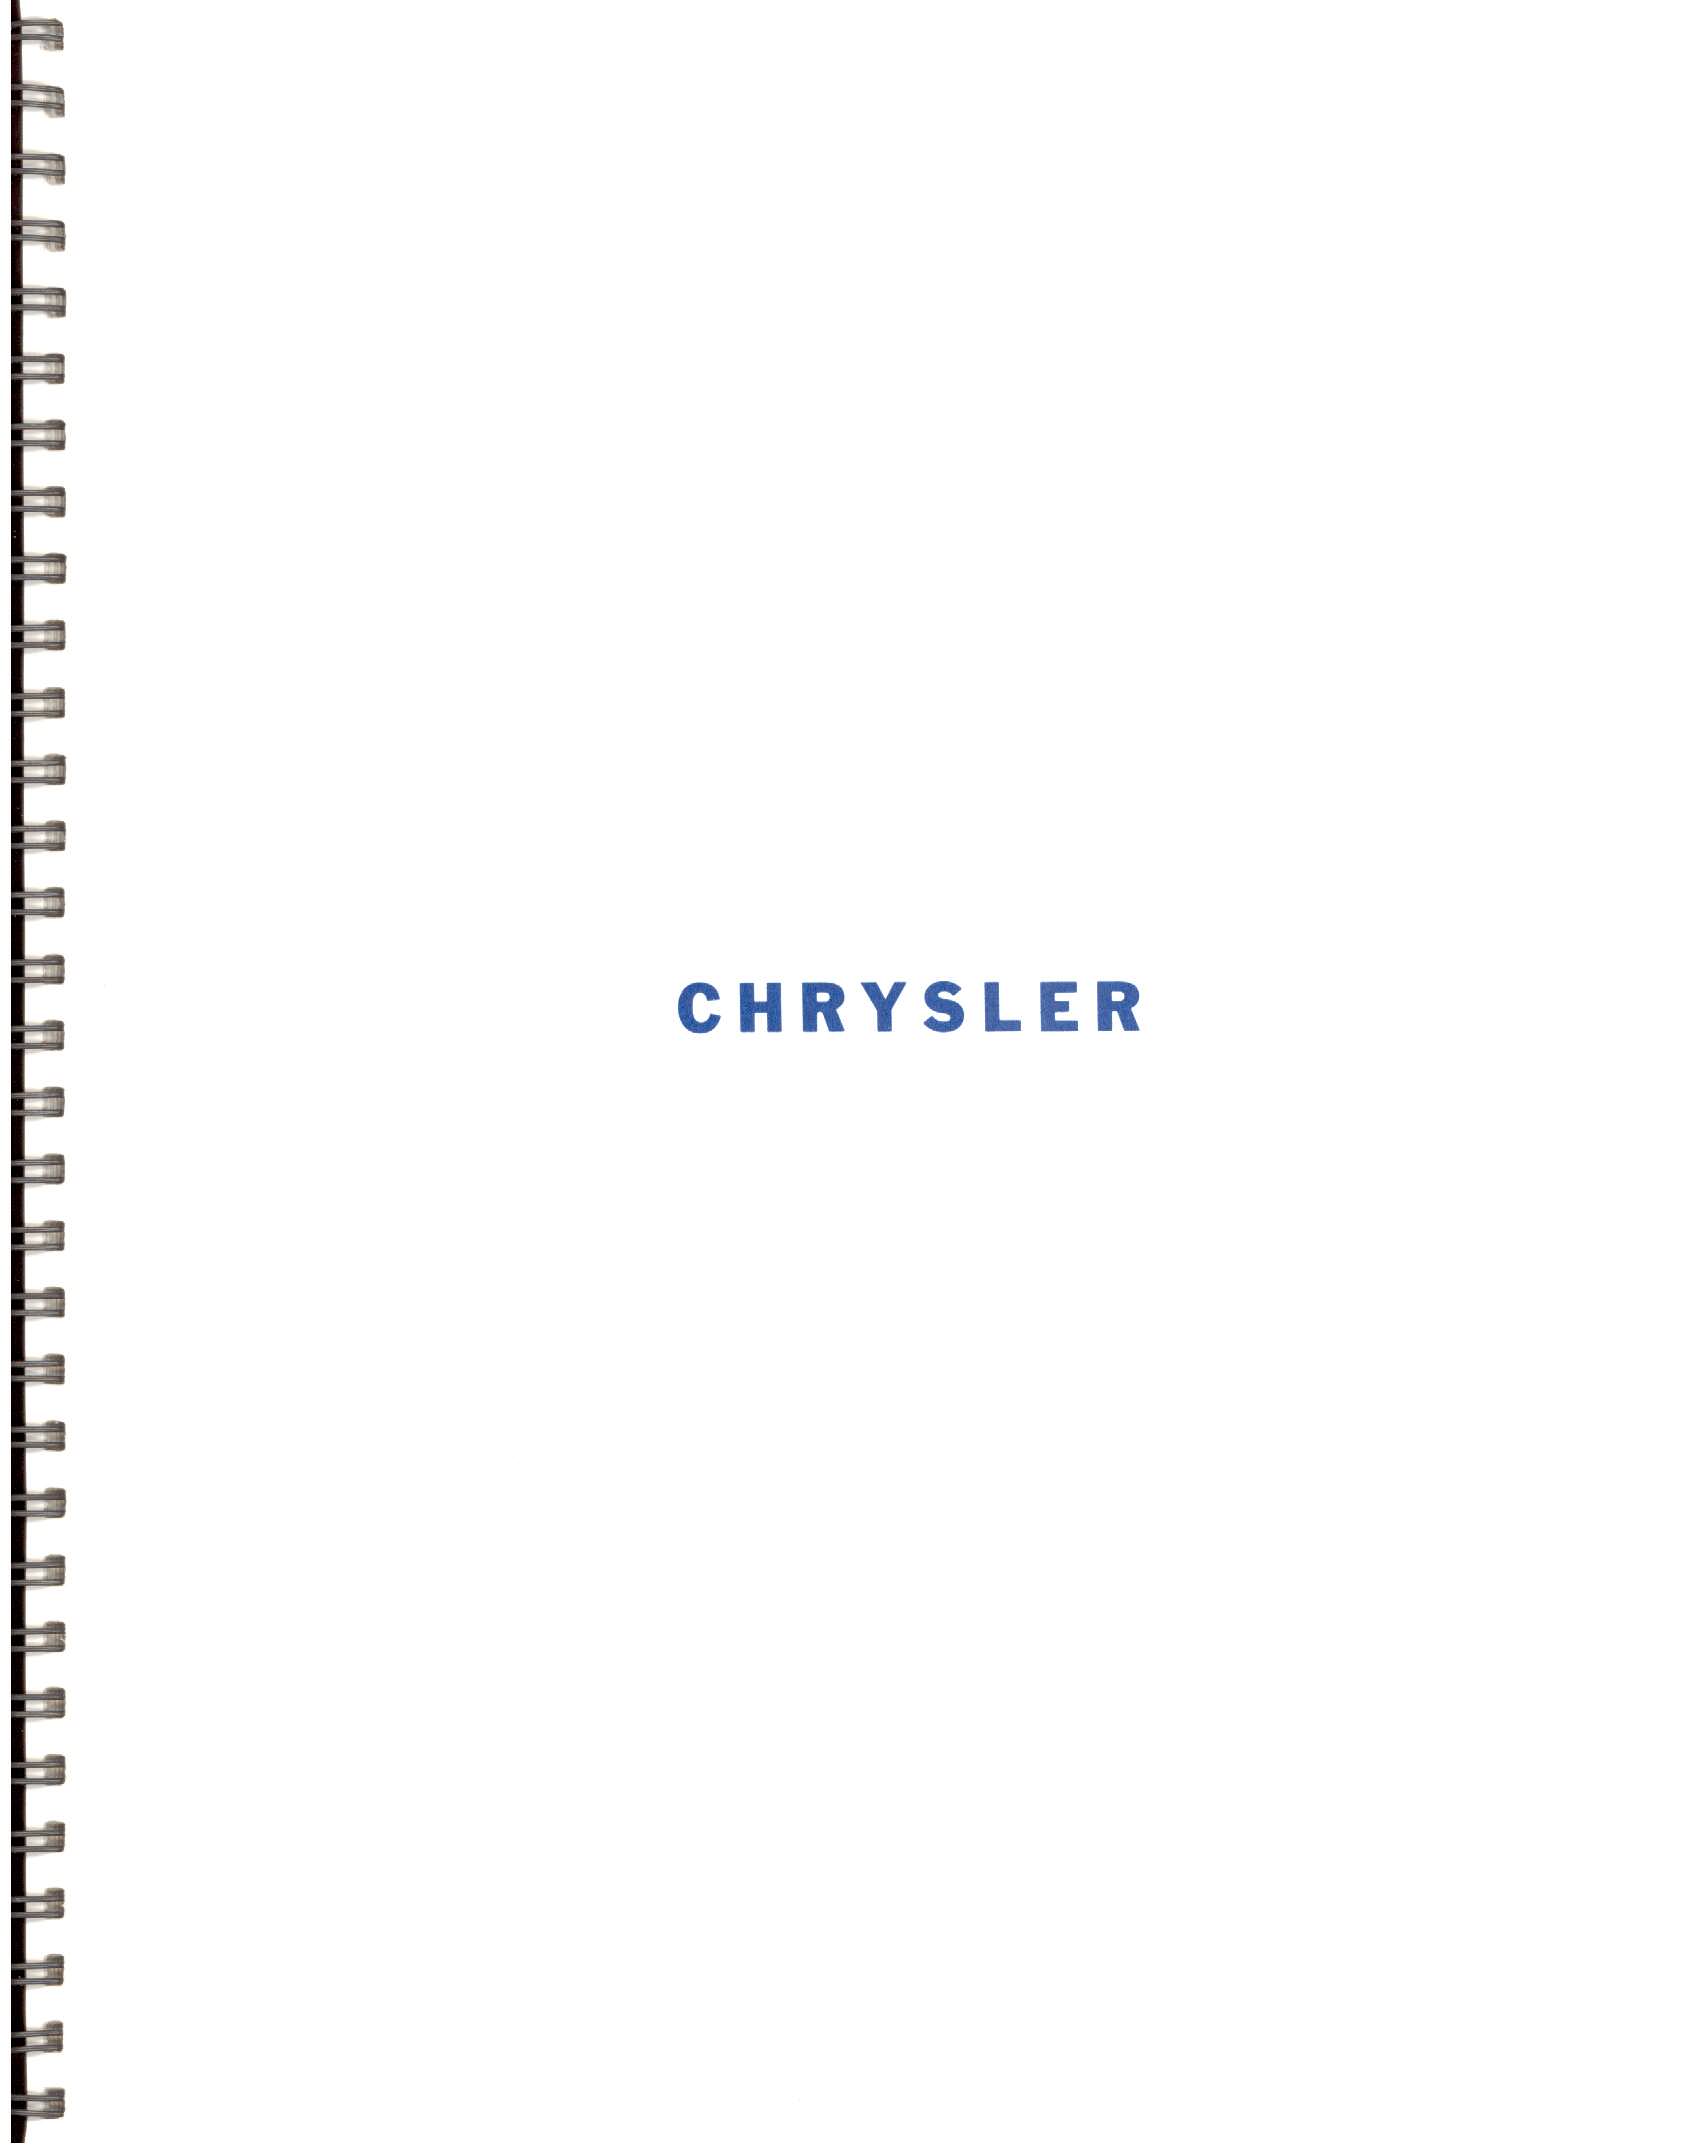 1966-History_Of_Chrysler_Cars-C00